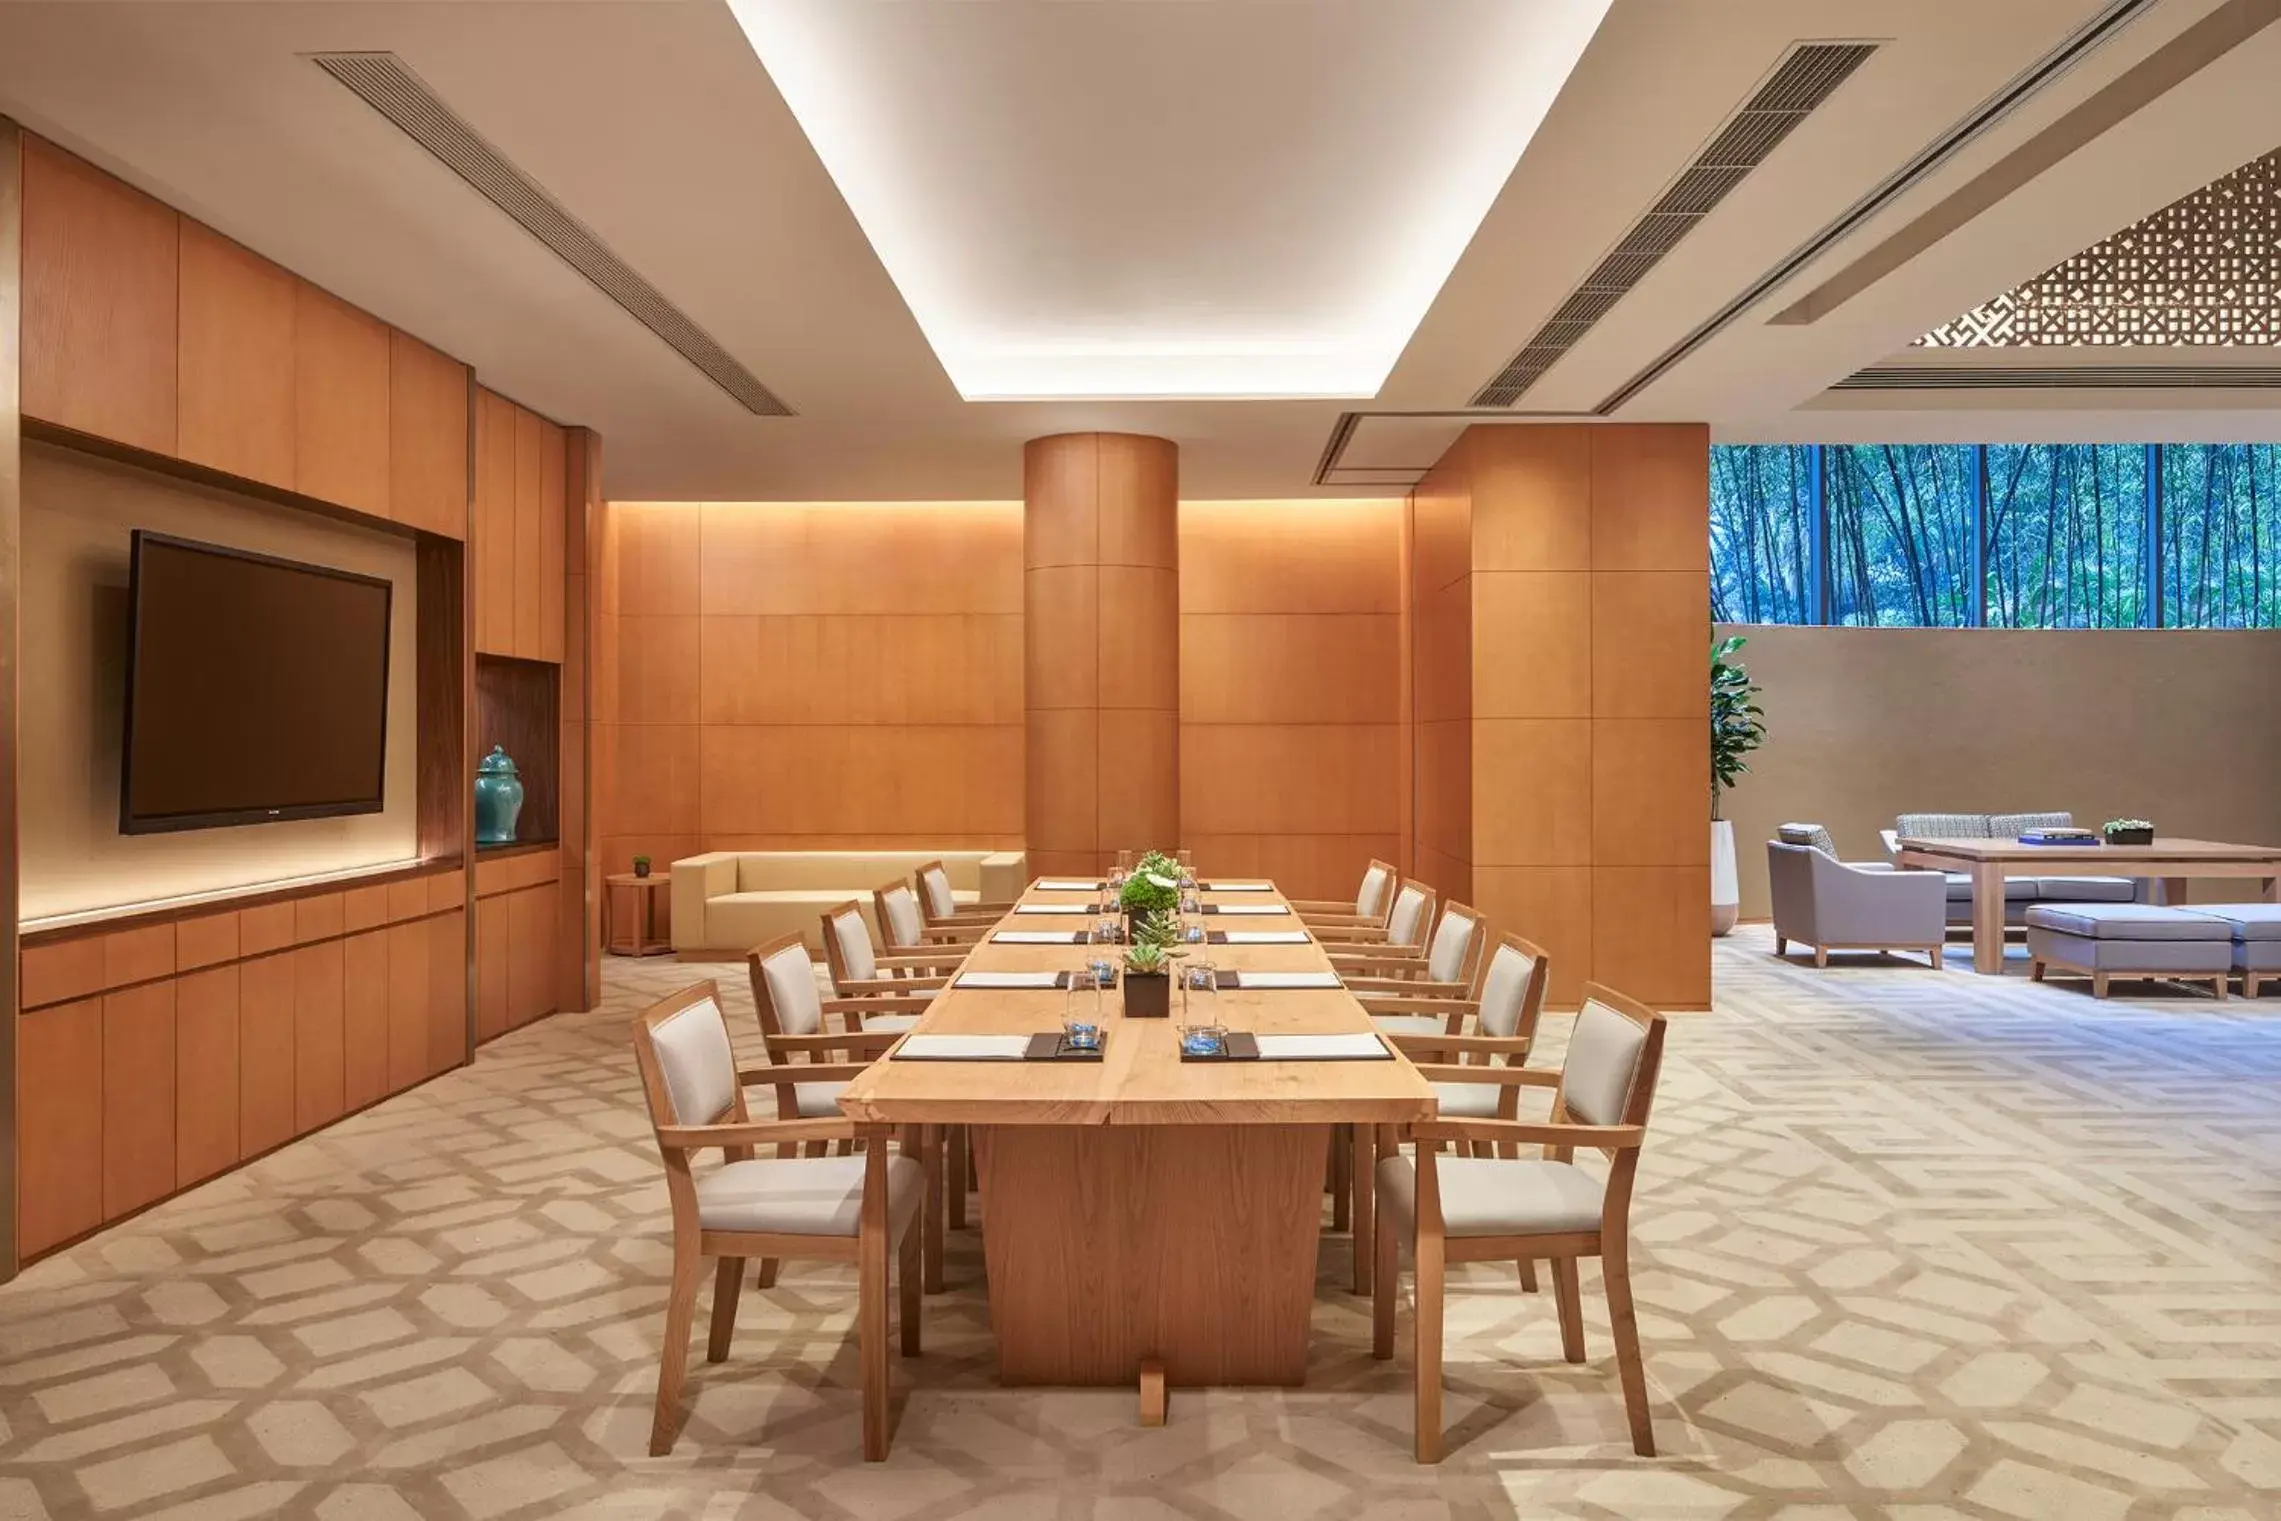 Meeting/conference room in Hyatt Regency Metropolitan Chongqing